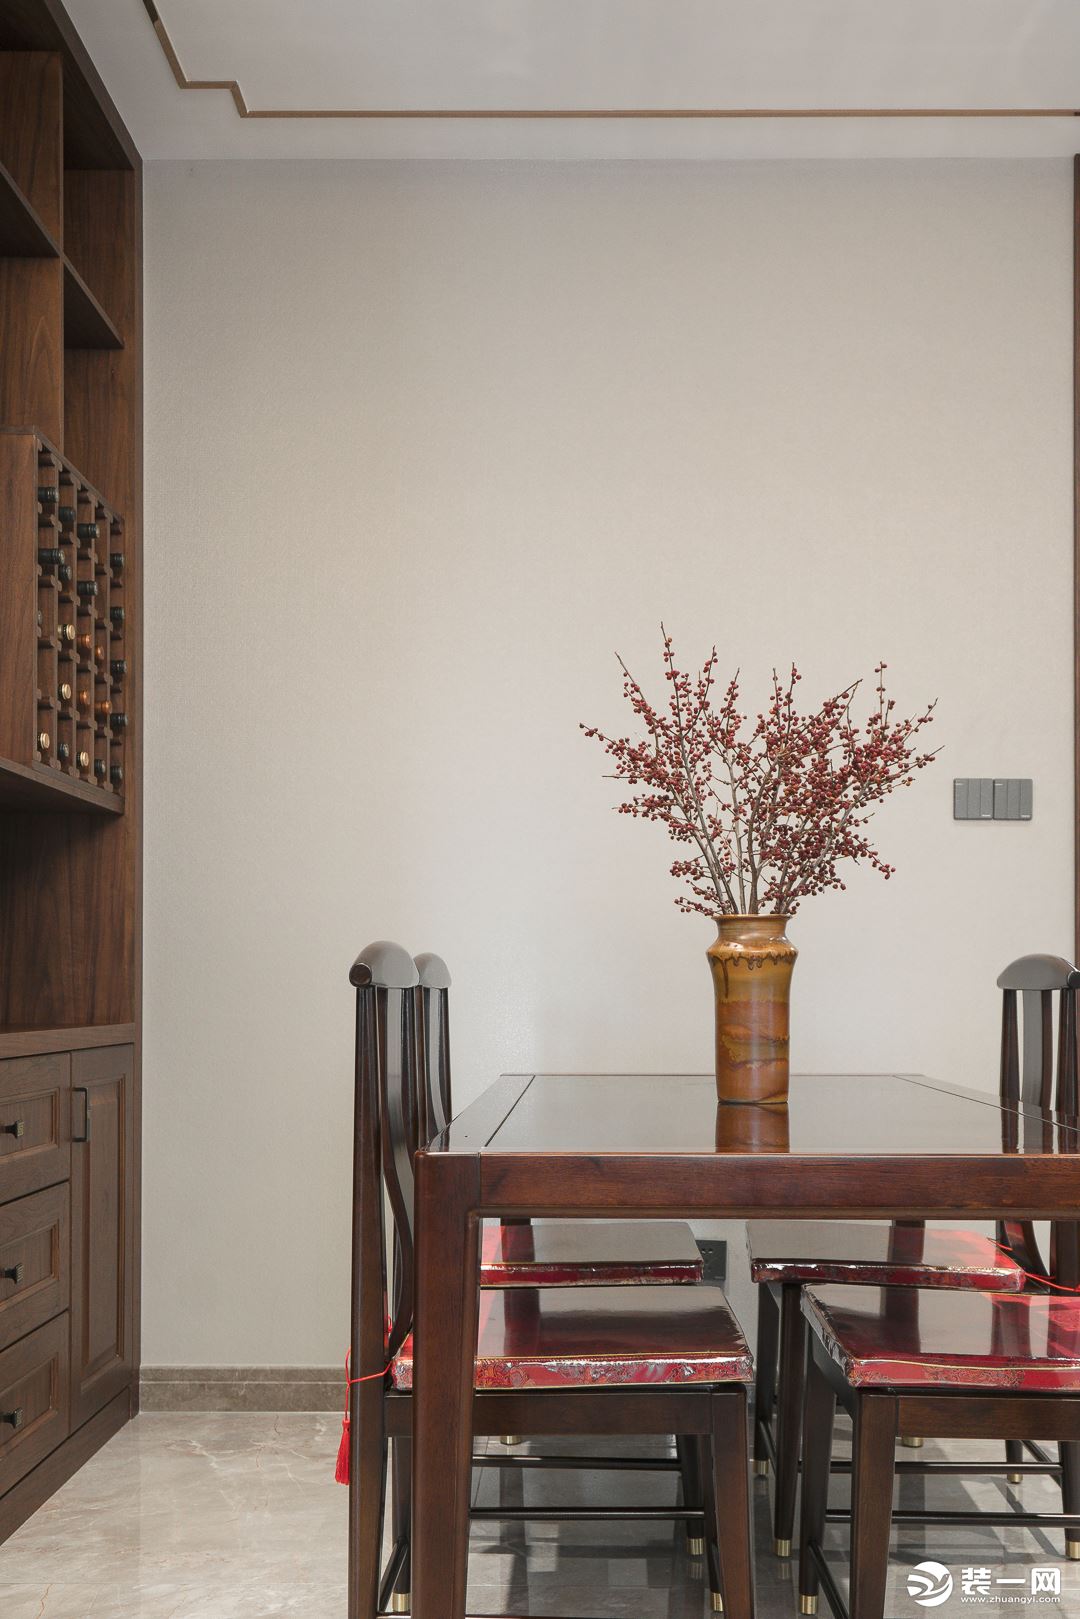 相对小型的方餐桌靠墙而设，一桌四椅，满足日常家庭就餐。